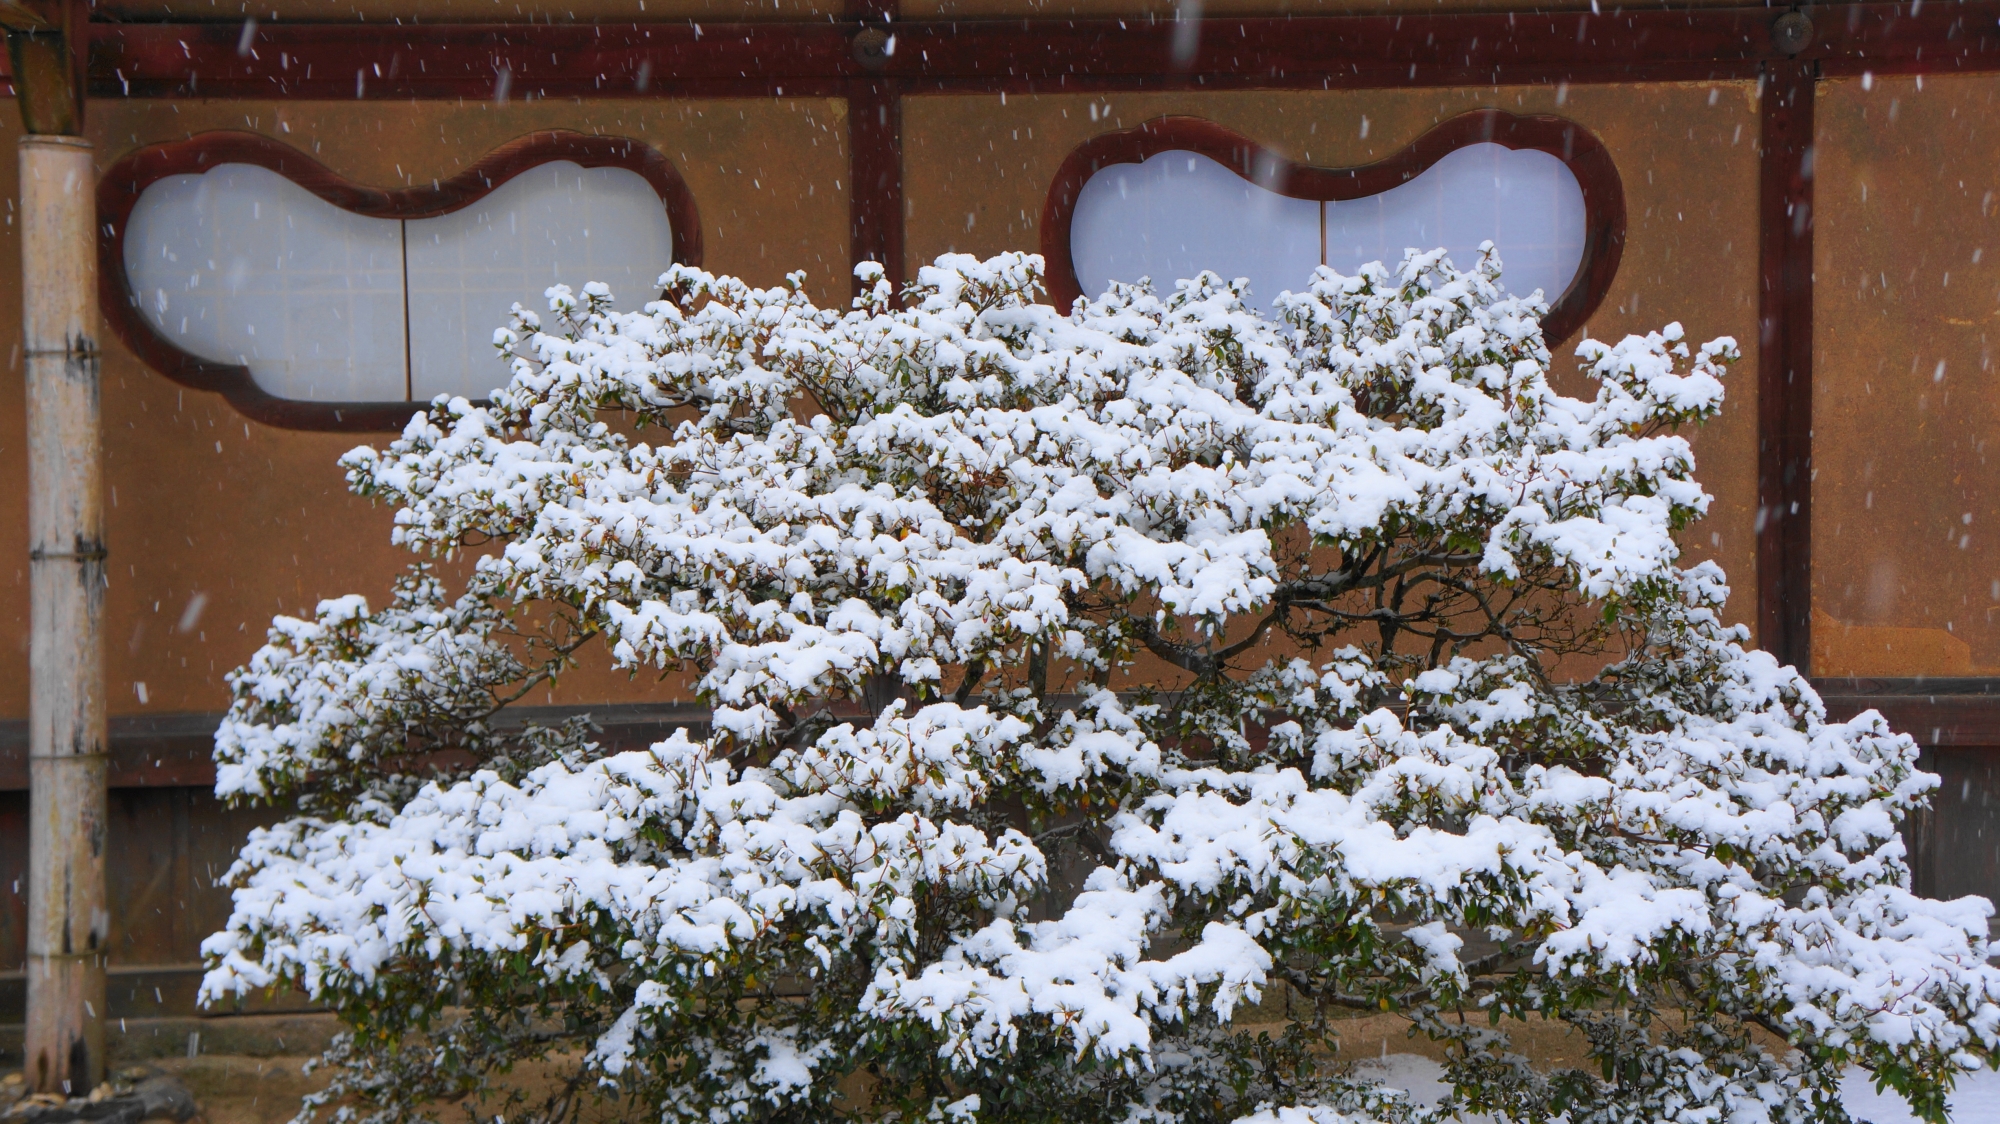 詩仙堂の雪化粧したキリシマツツジと独特の形をした趣きある窓